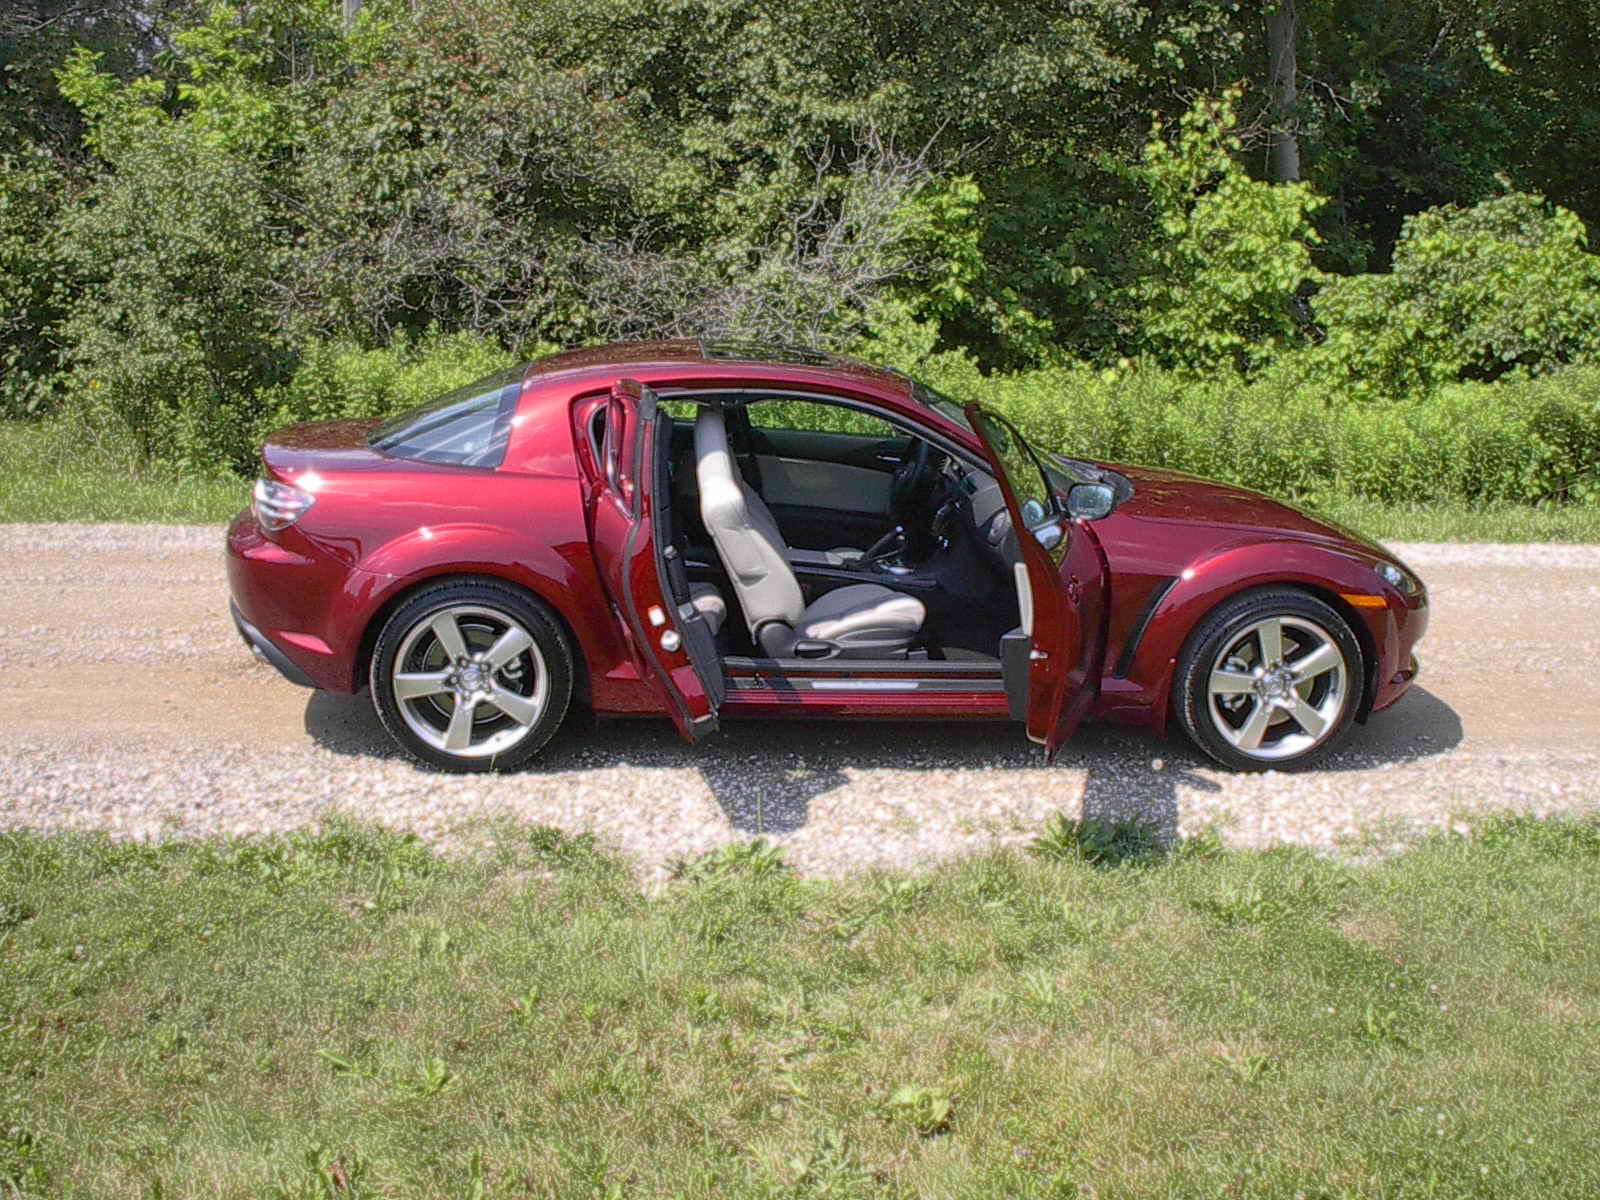 2006 Mazda RX8